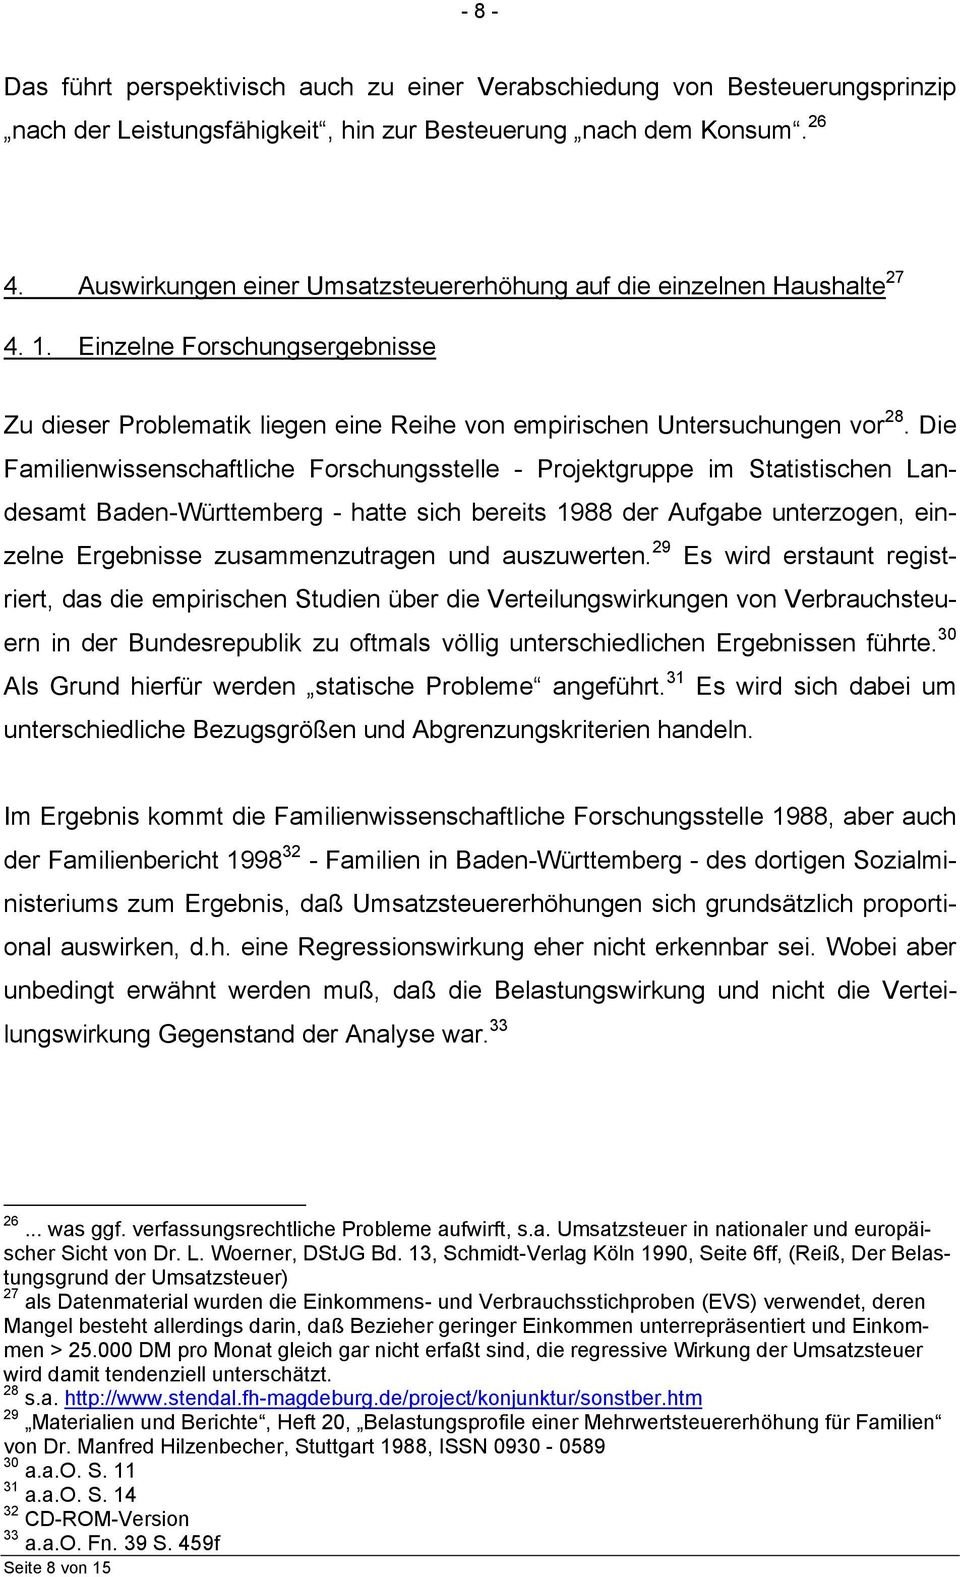 Die Familienwissenschaftliche Forschungsstelle - Projektgruppe im Statistischen Landesamt Baden-Württemberg - hatte sich bereits 1988 der Aufgabe unterzogen, einzelne Ergebnisse zusammenzutragen und